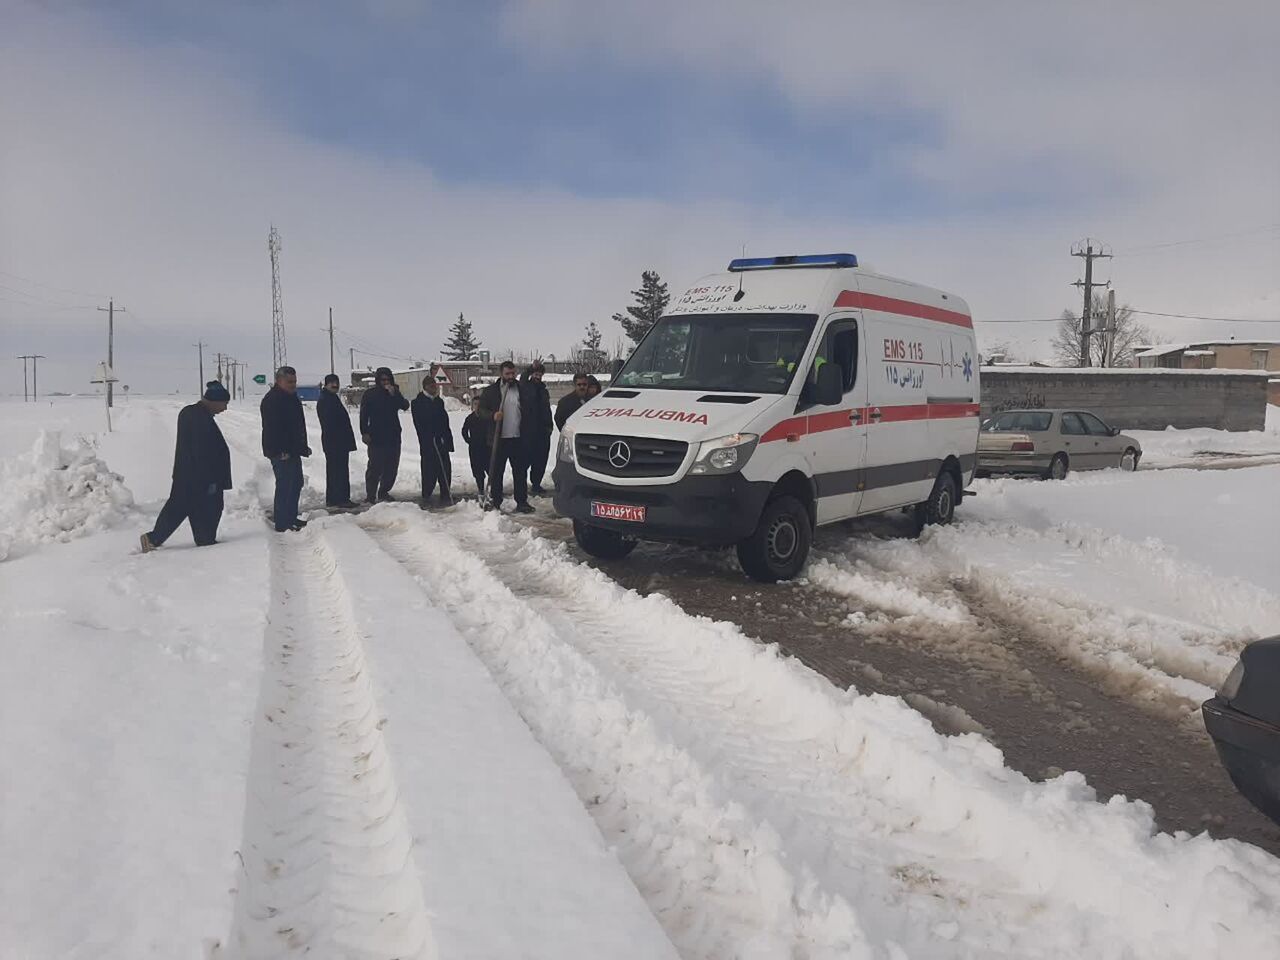 ۱۲ مادر باردار در برف و سرمای کردستان به مراکز درمانی منتقل شدند